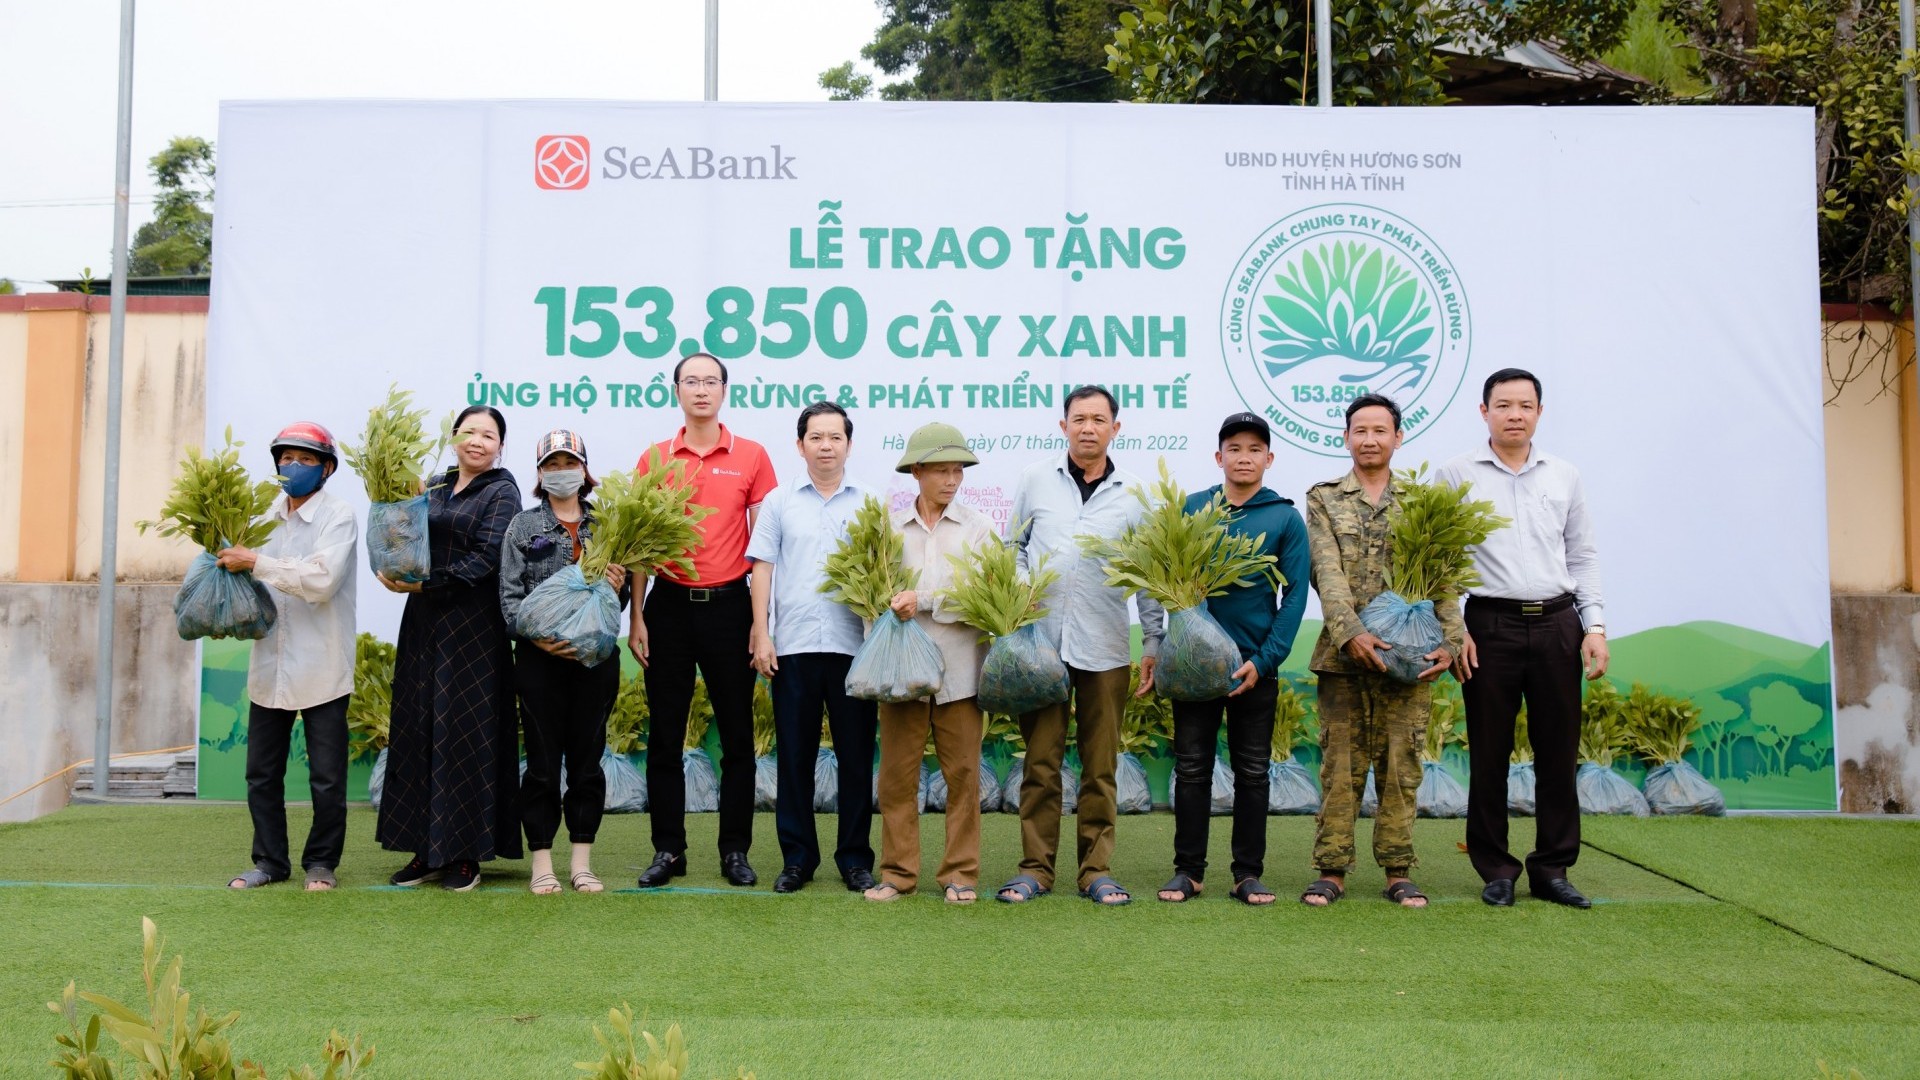 Seabank trao tặng gần 154.000 cây xanh ủng hộ trồng rừng và phát triển kinh tế tại Hà Tĩnh